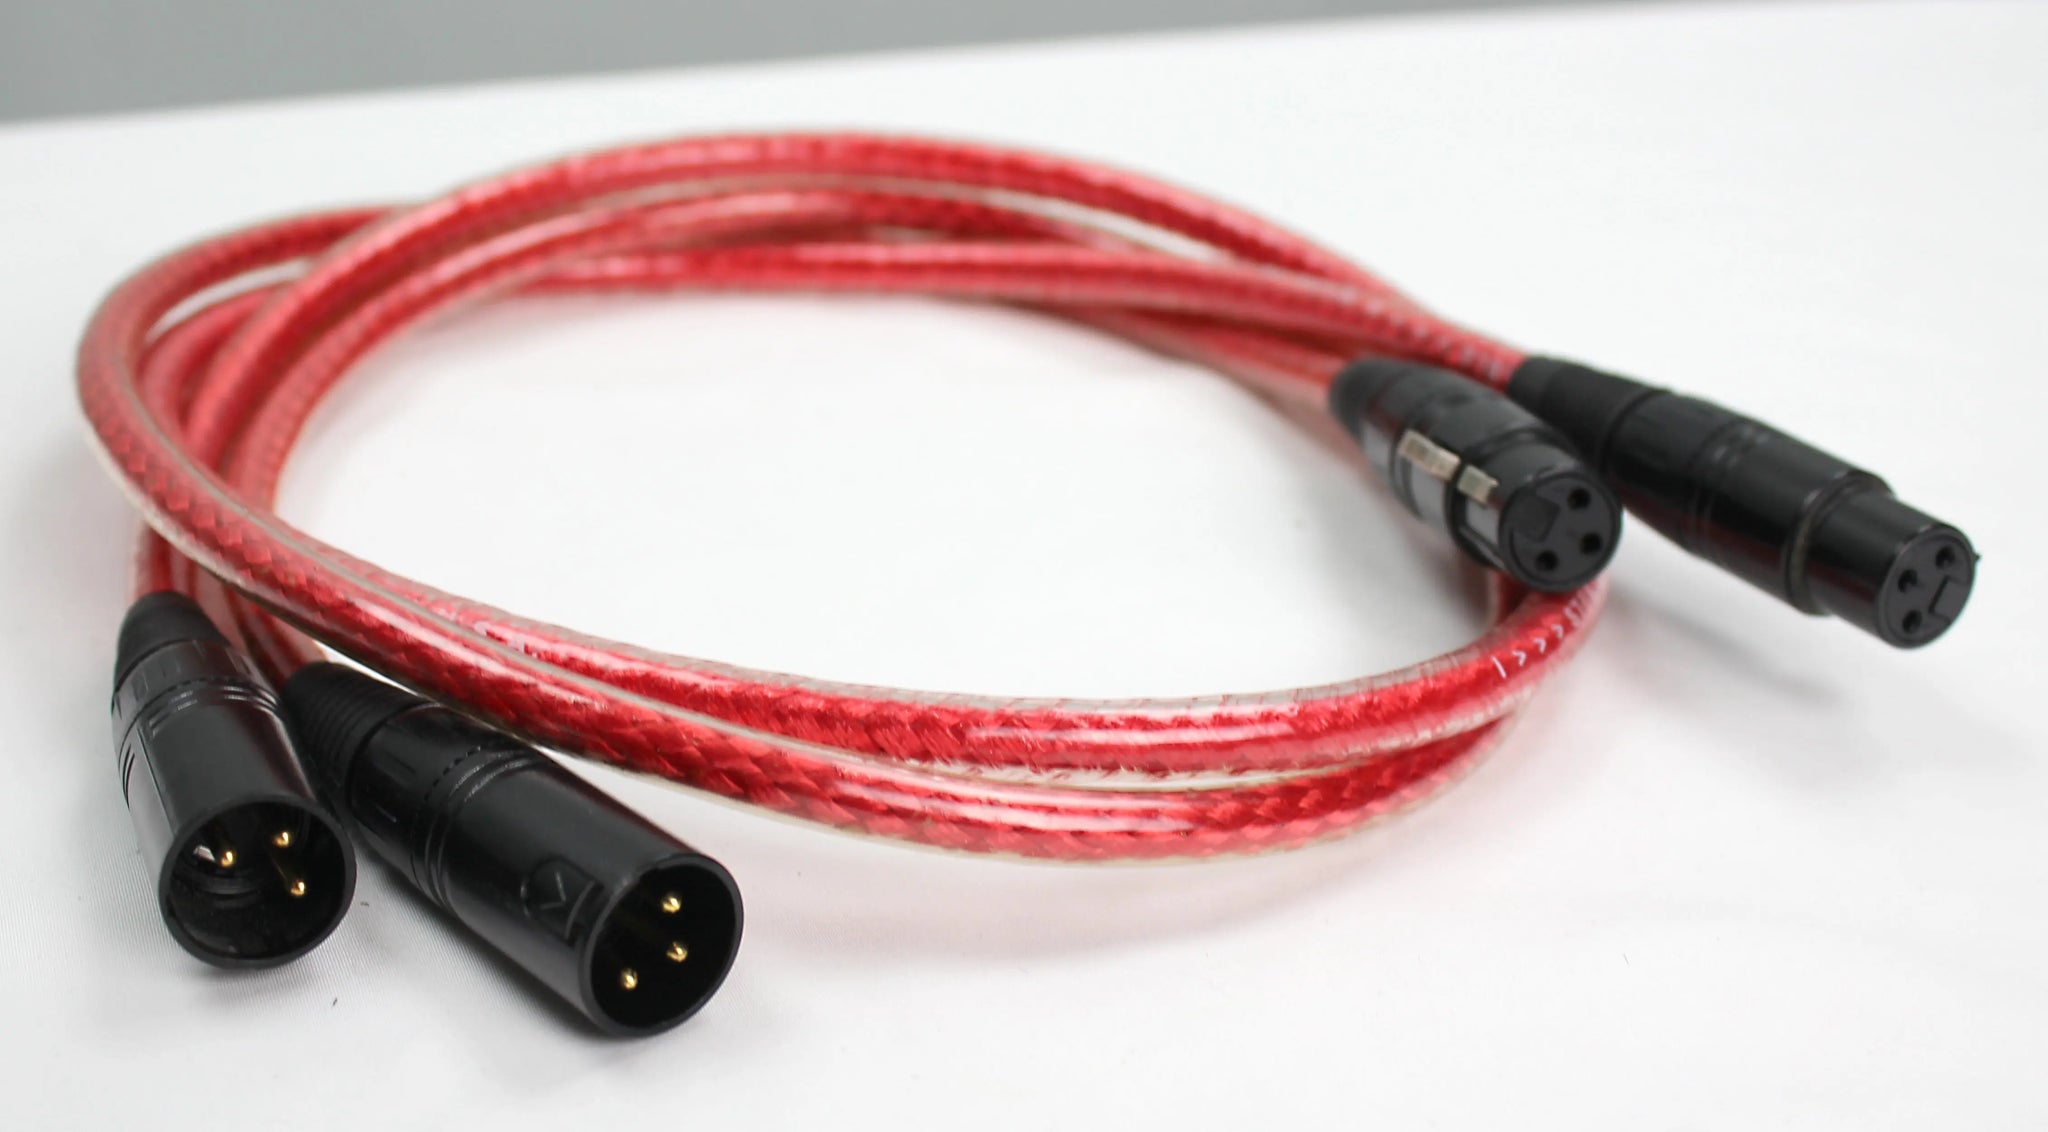 Straight Wire Crescendo II audio interconnects XLR 1,5 metre